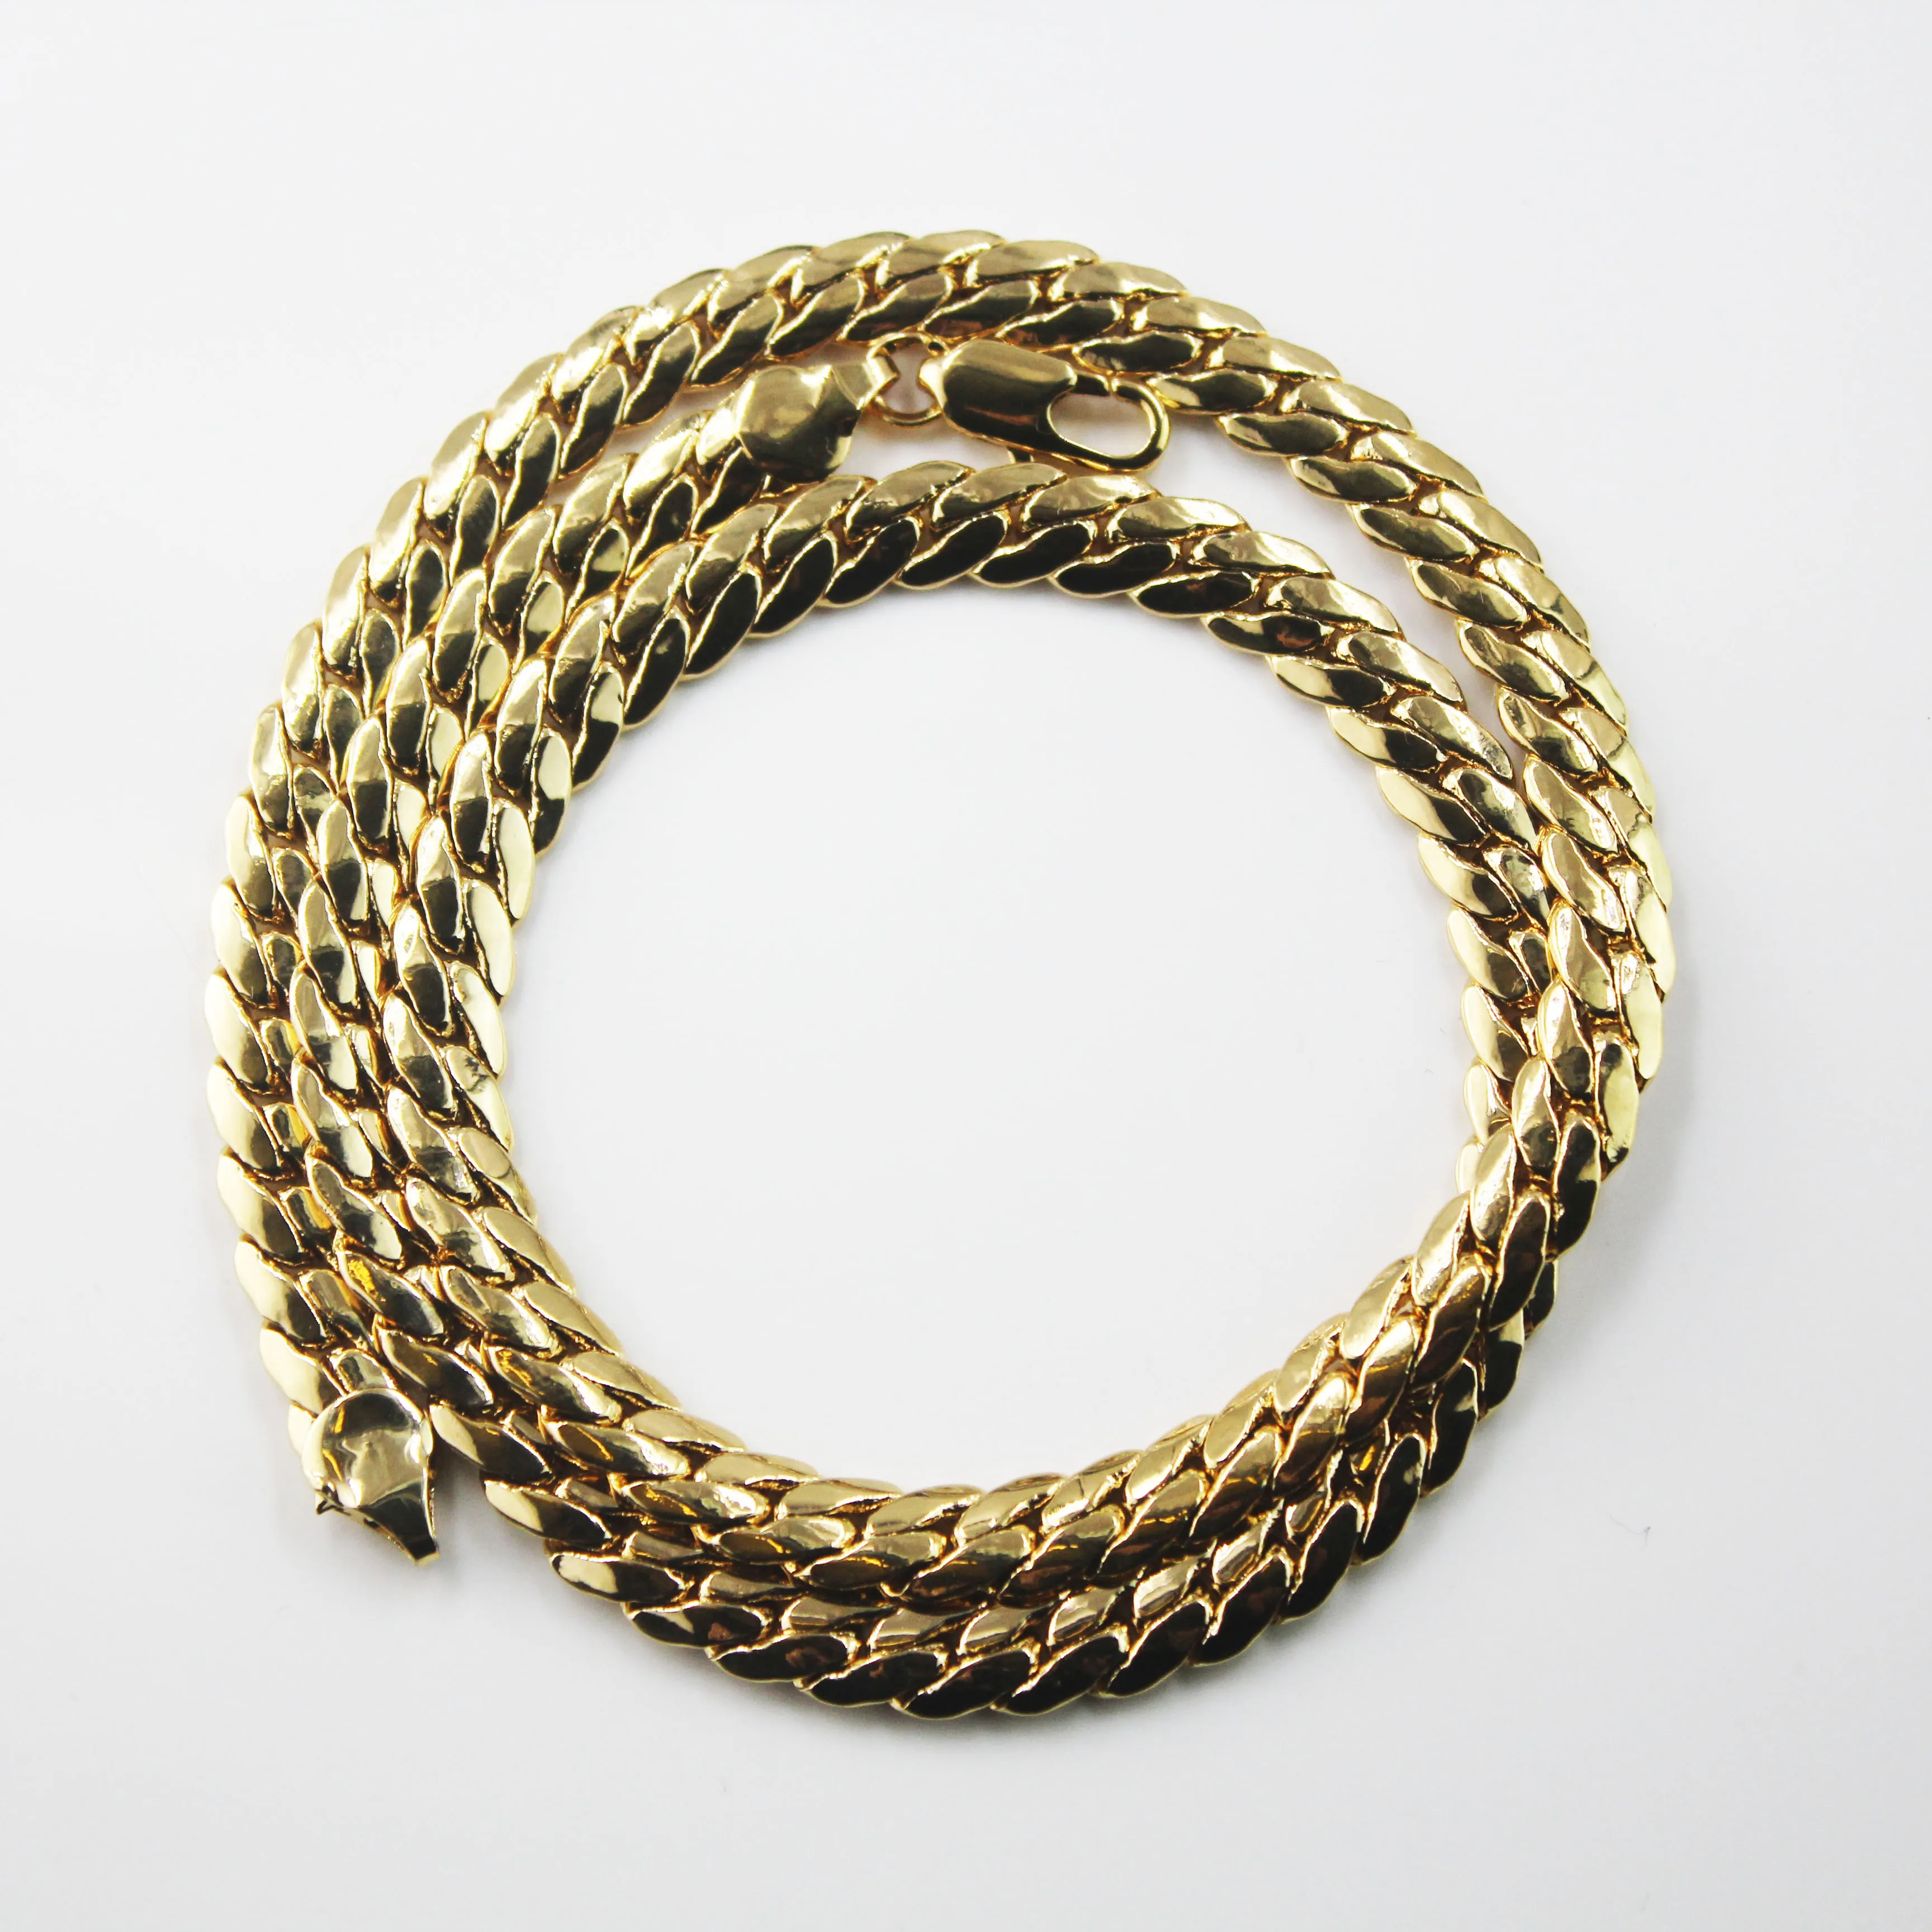 BMZ 60*0.7cm 18K gerçek altın iyon kaplama düz yuvarlak yılan kolye orta düz altın yılan zinciri